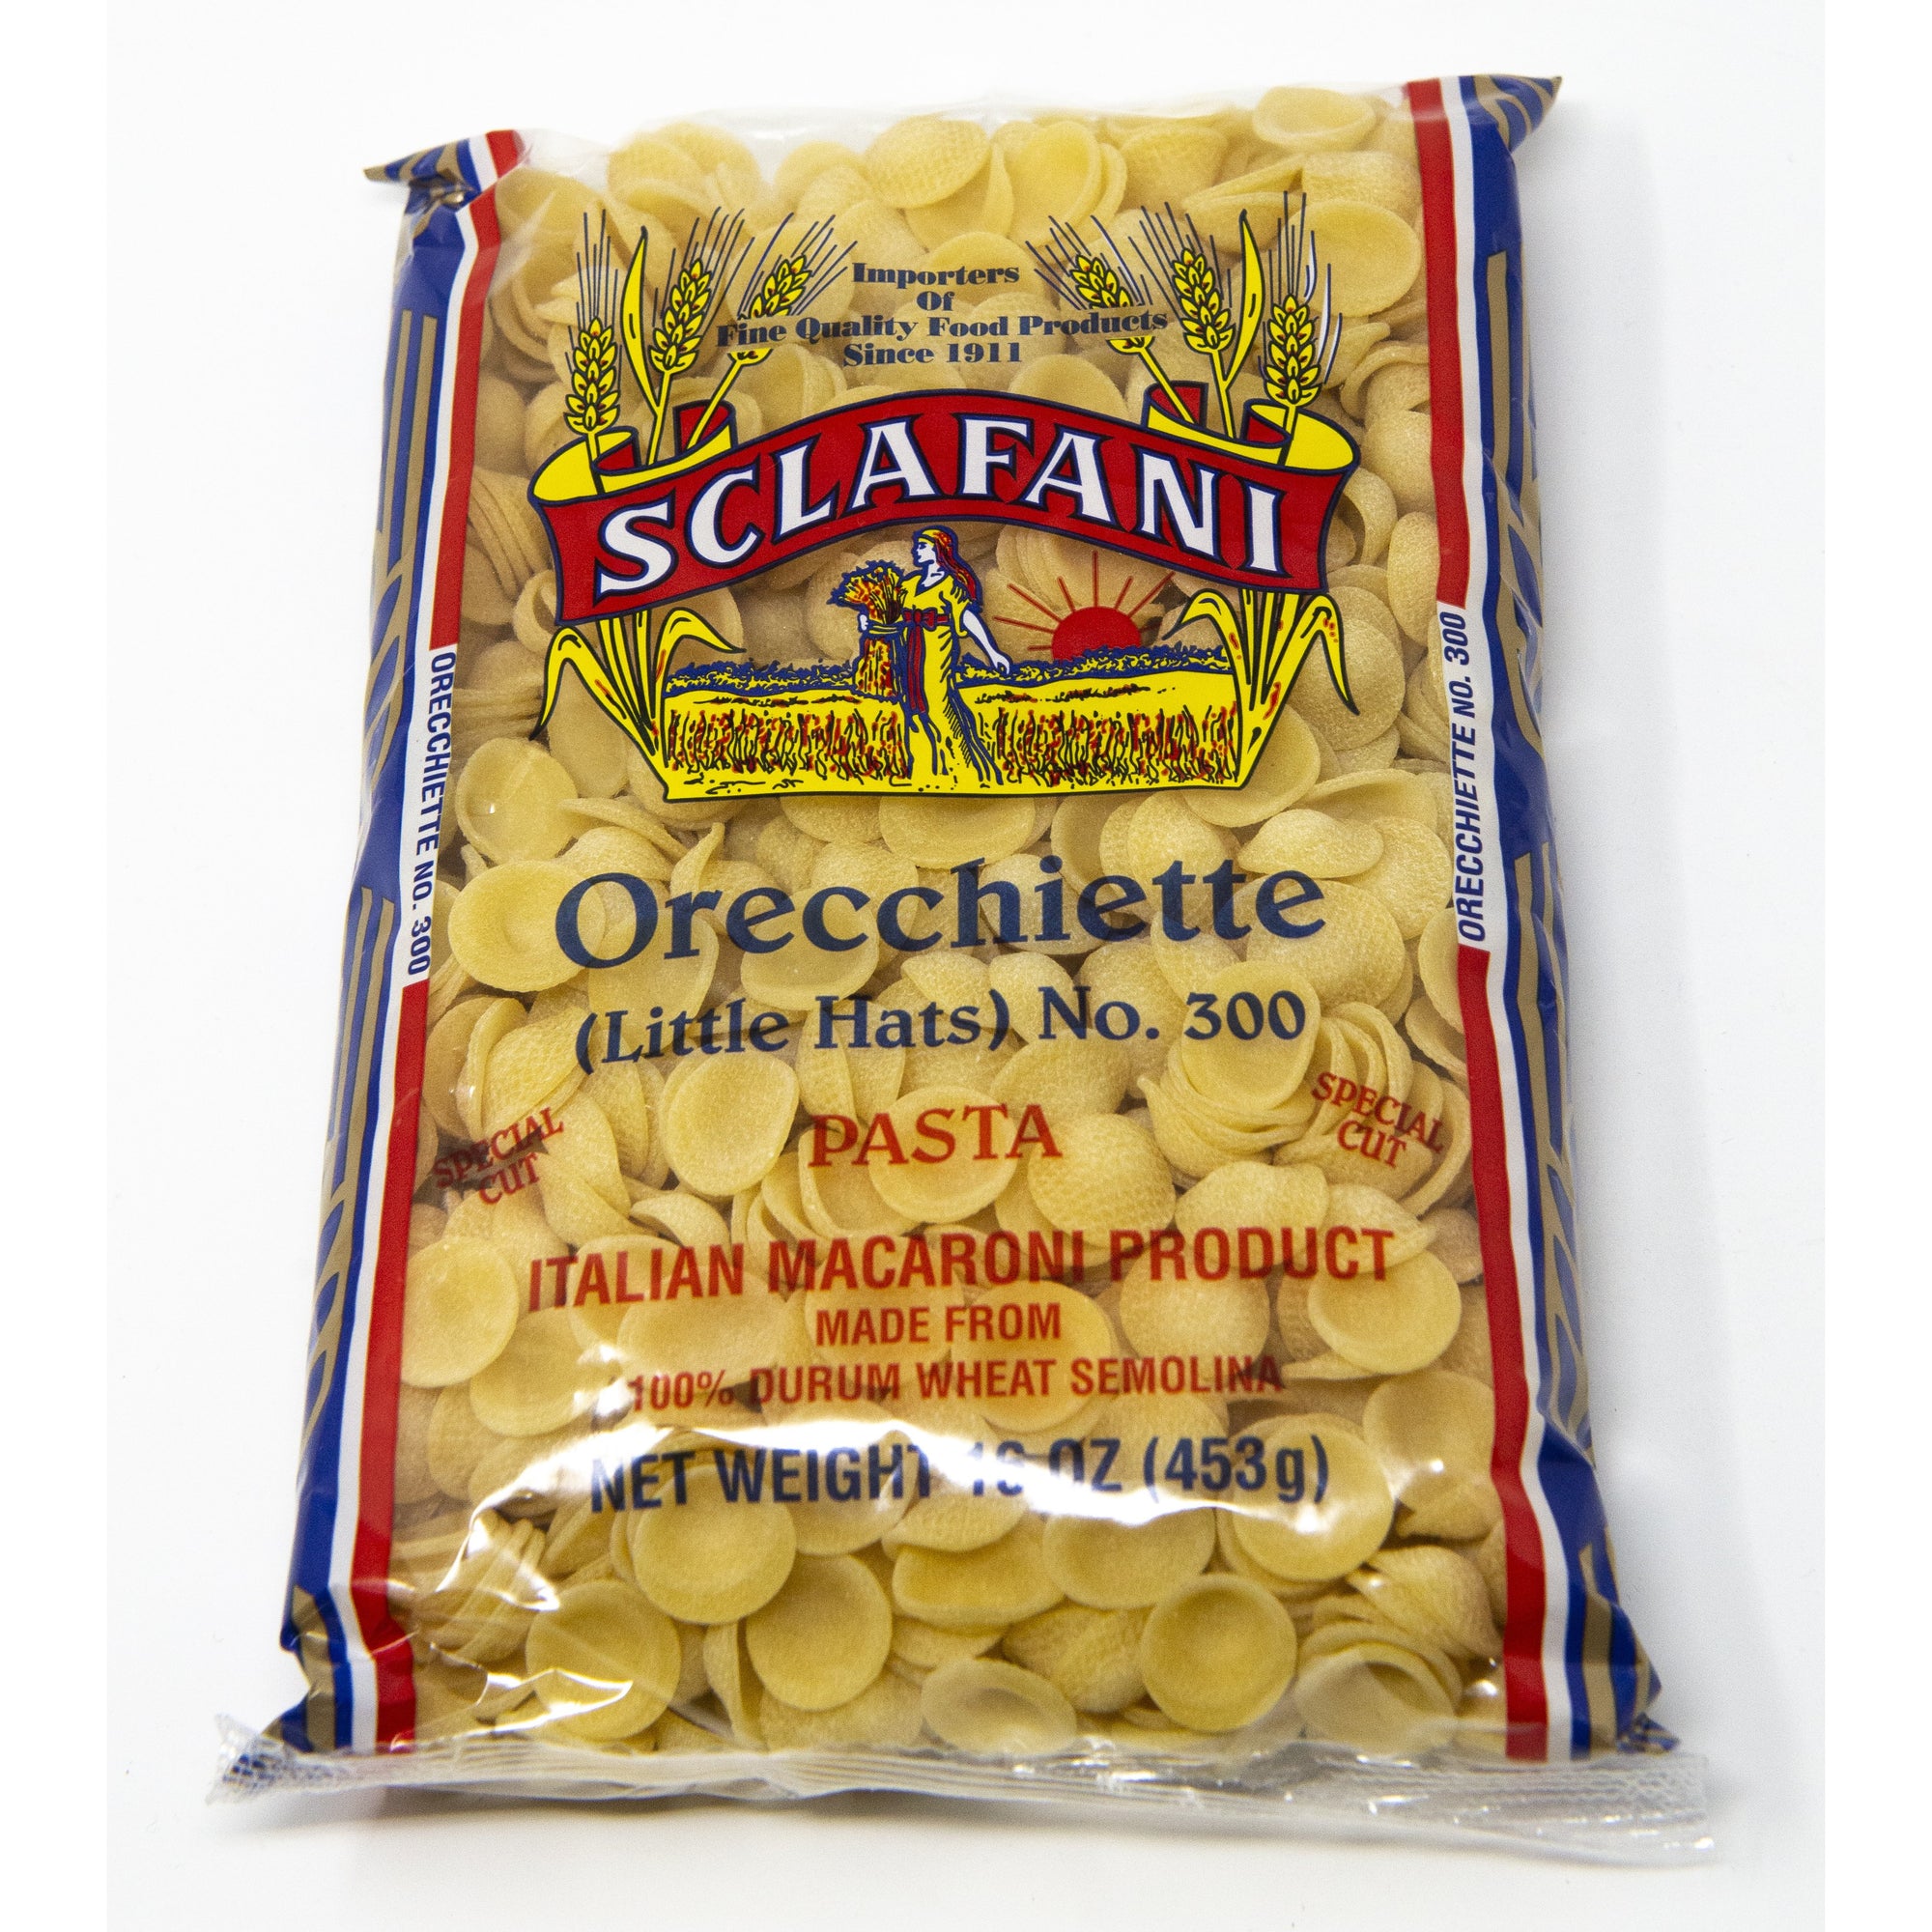 Sclafani Pasta #300 Orecchiette Piccole (Little Hats) 1 lb.